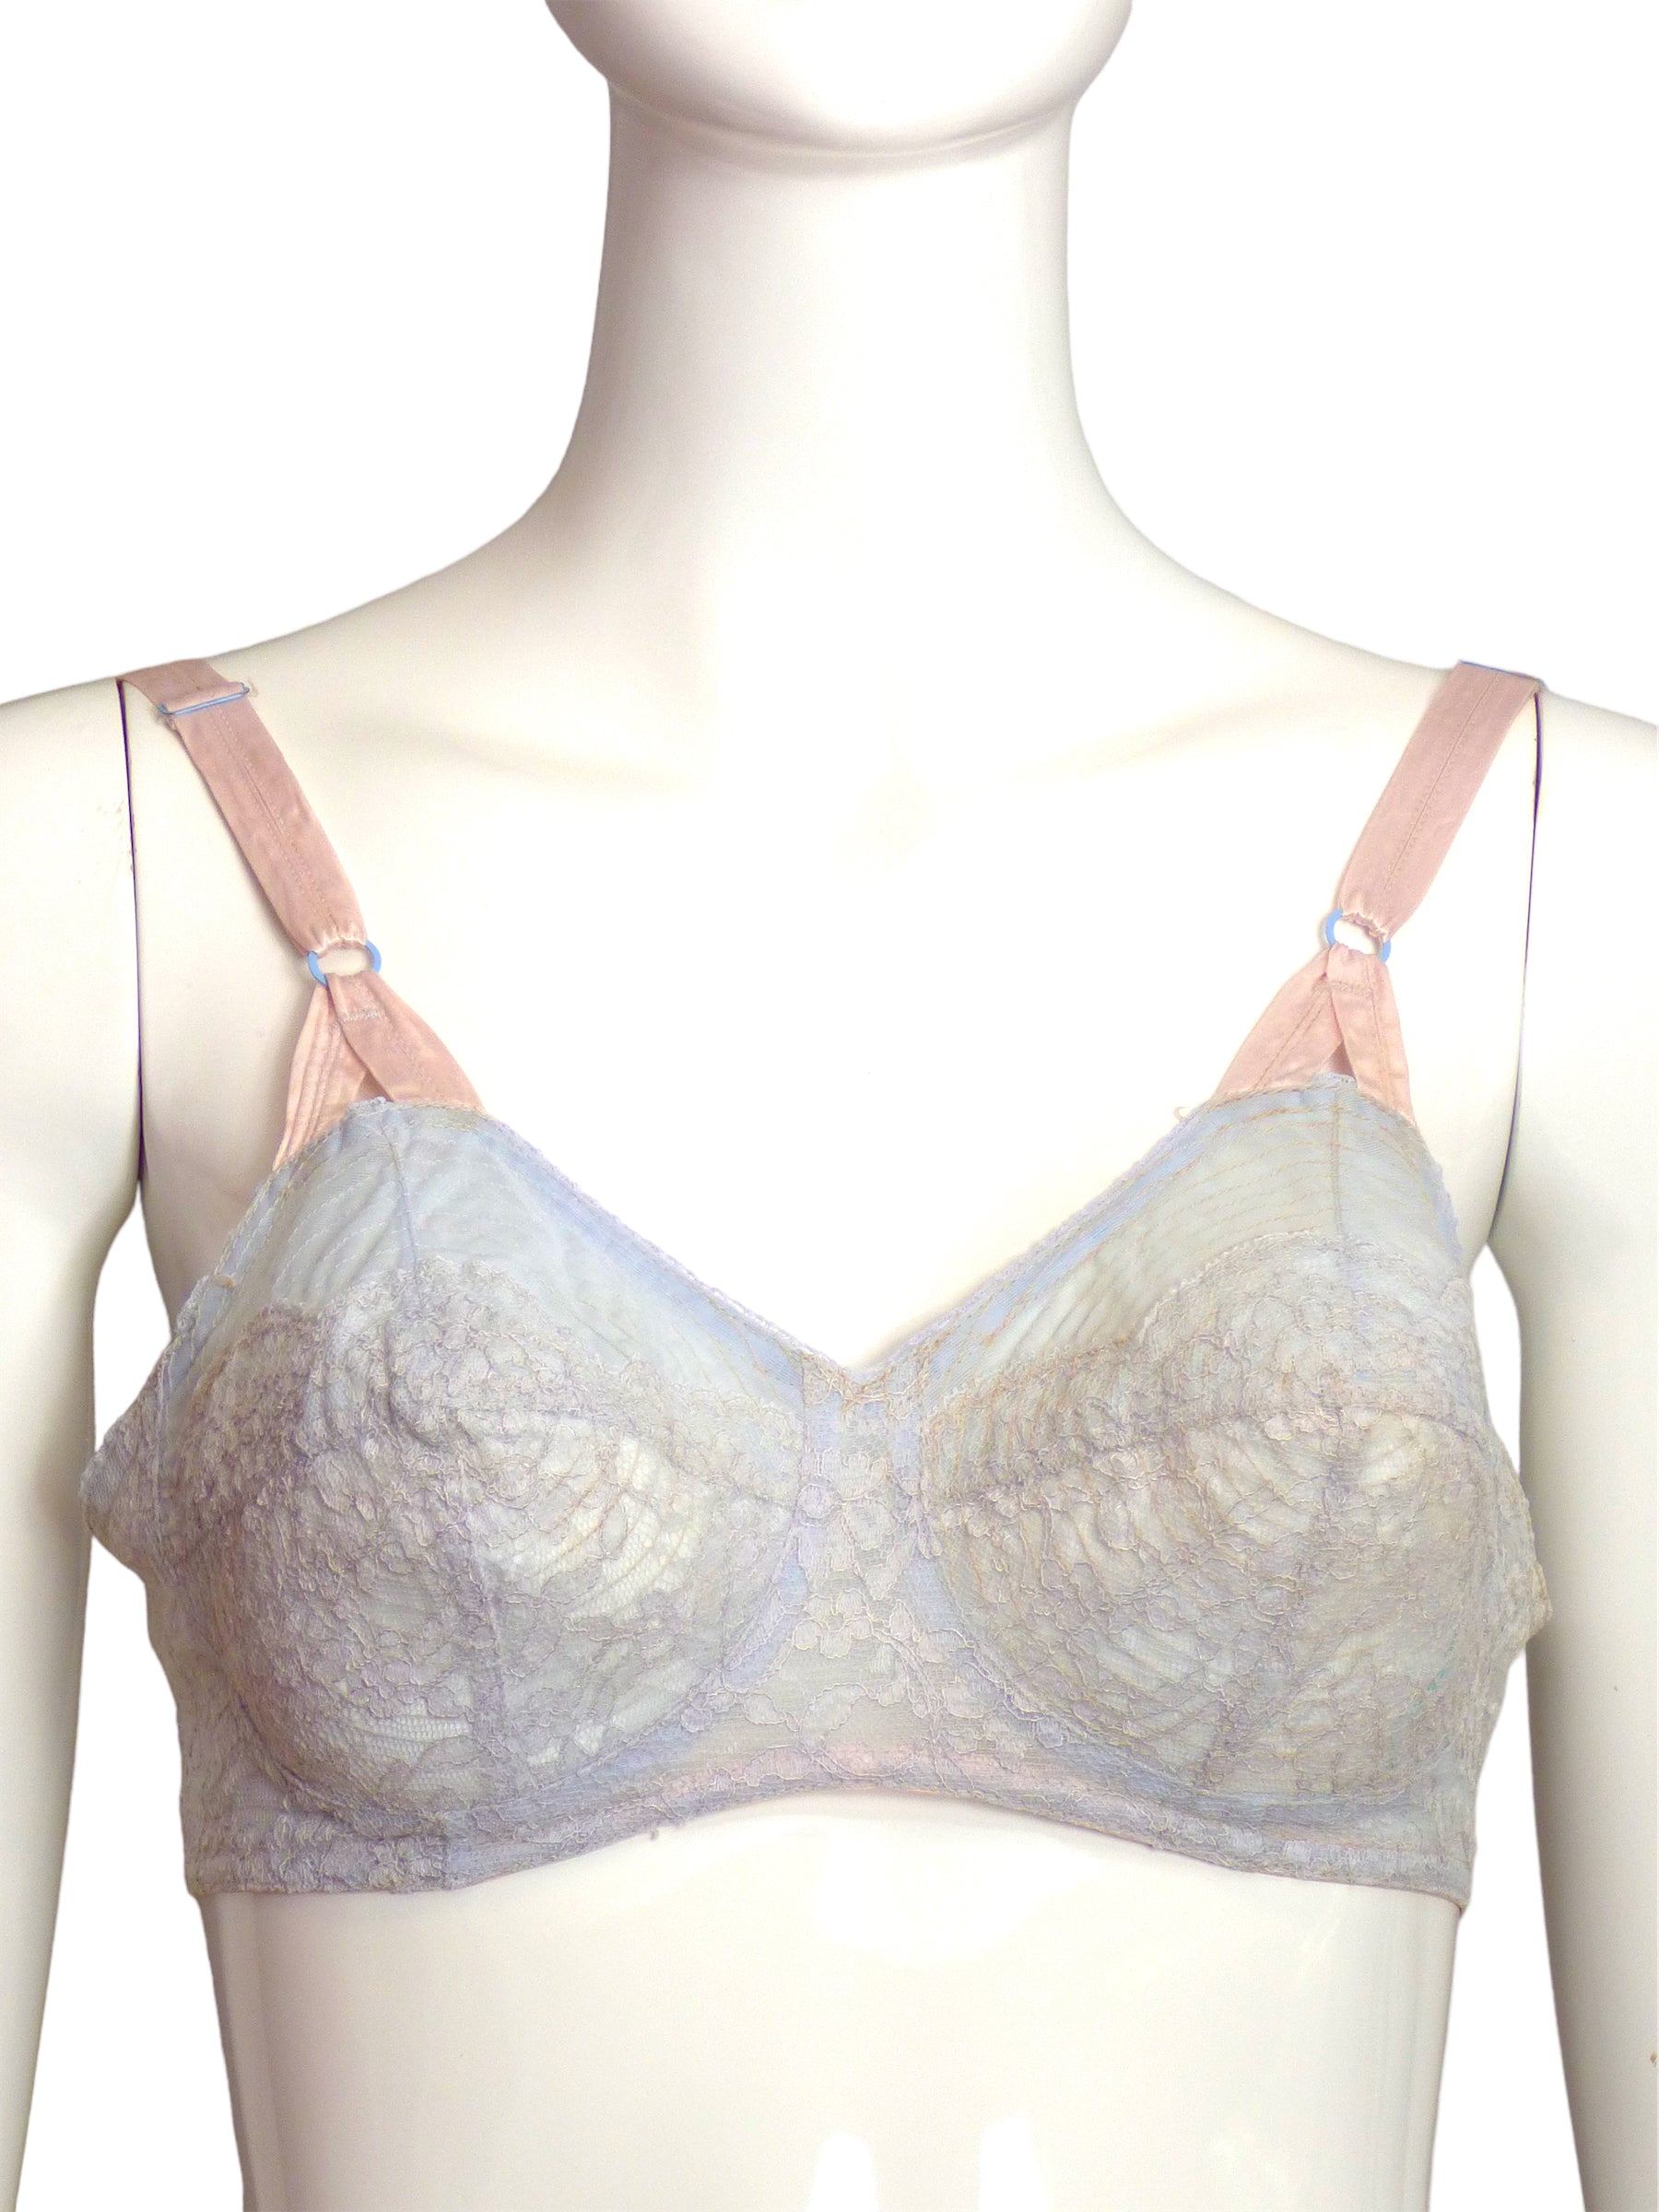 A bra in the brand vassarette